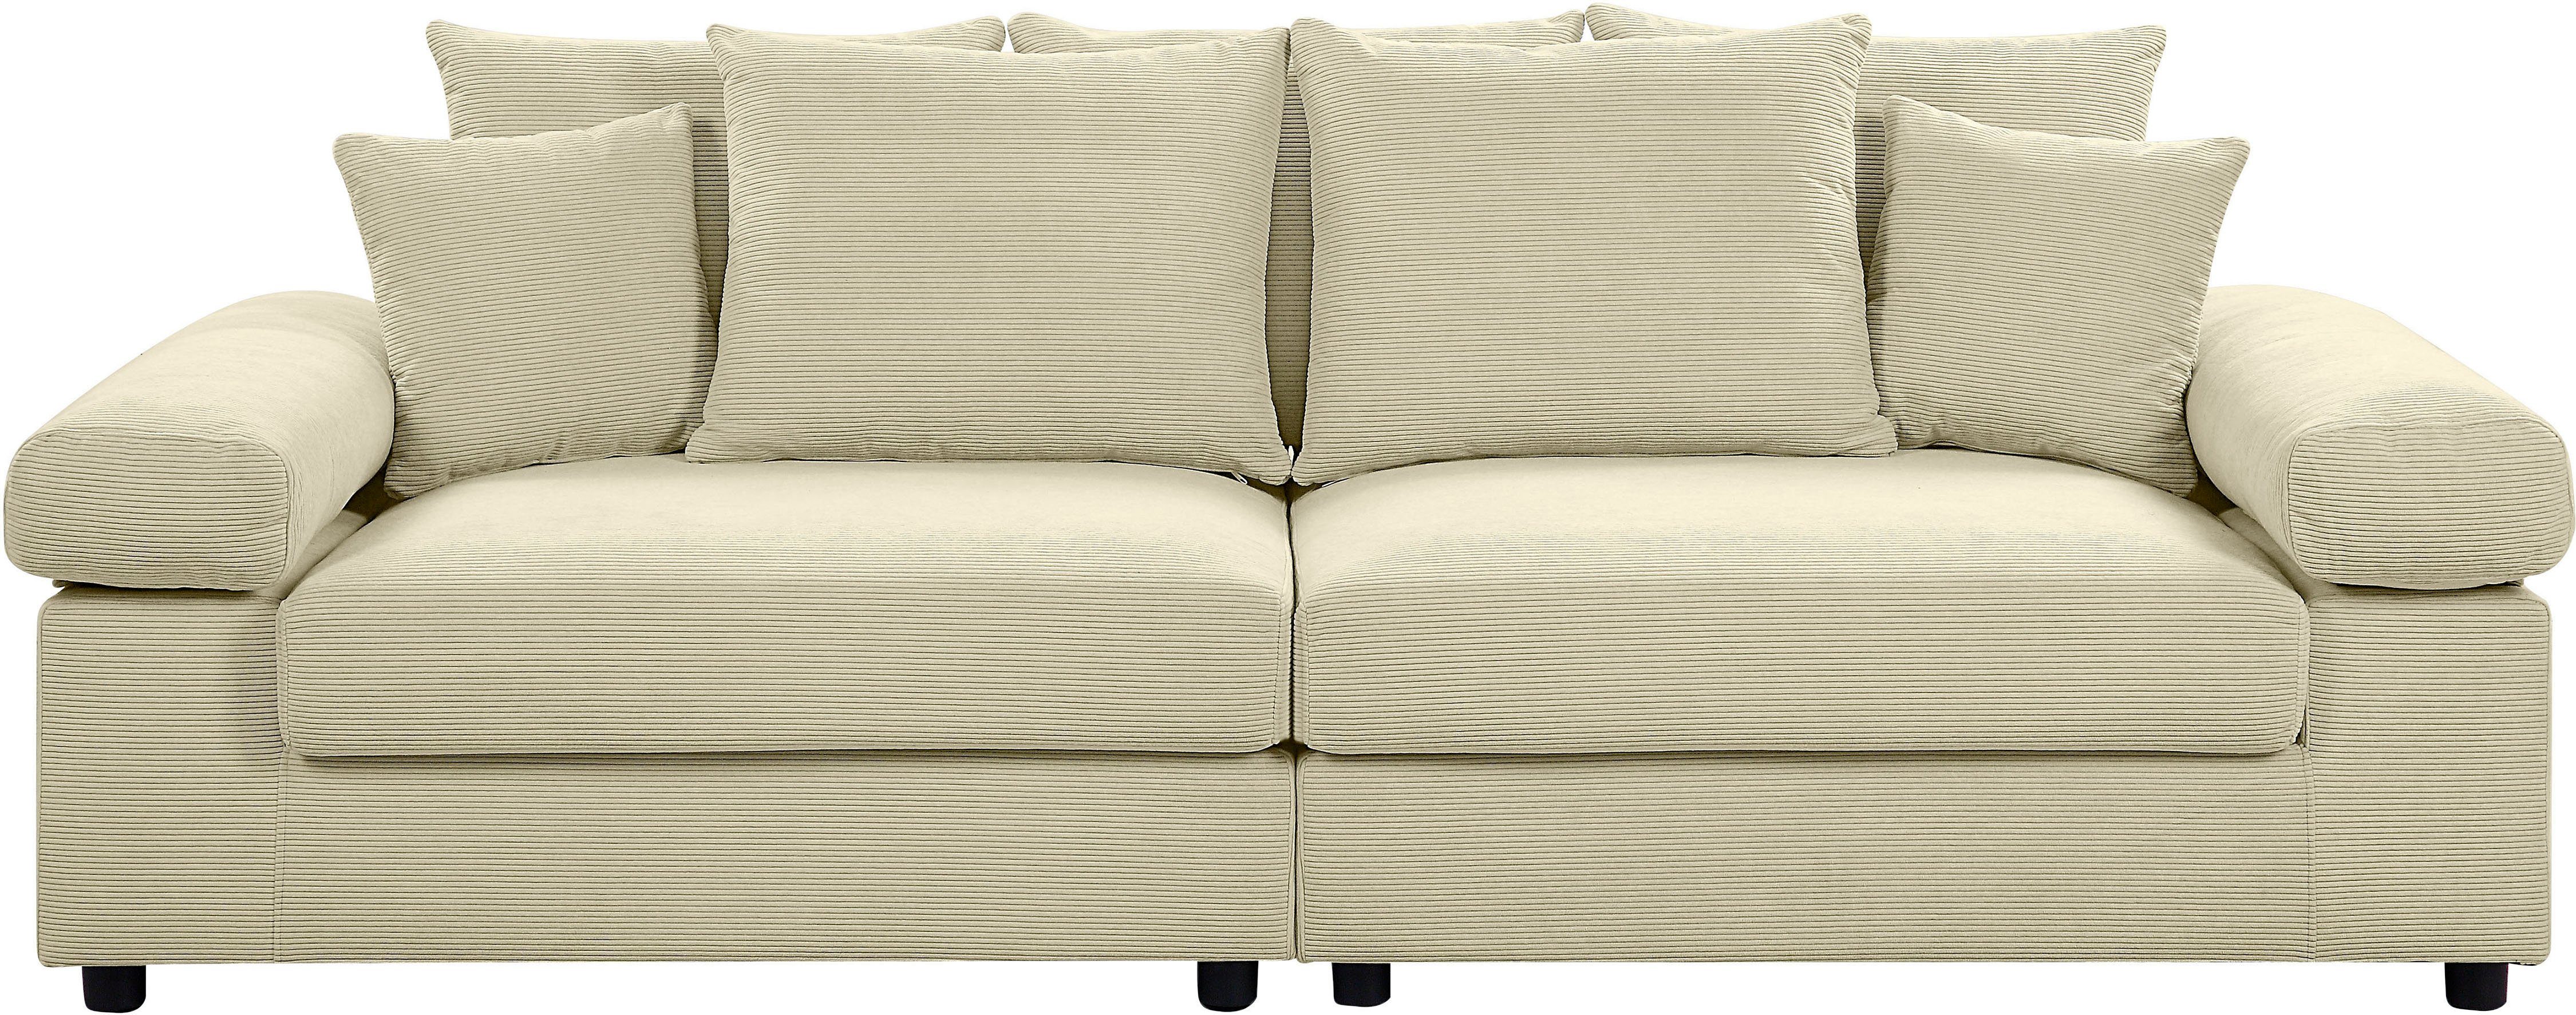 XXL-Sitzfläche, mit stellbar ATLANTIC mit Raum creme Federkern, Bjoern, collection home frei im Big-Sofa Cord-Bezug,